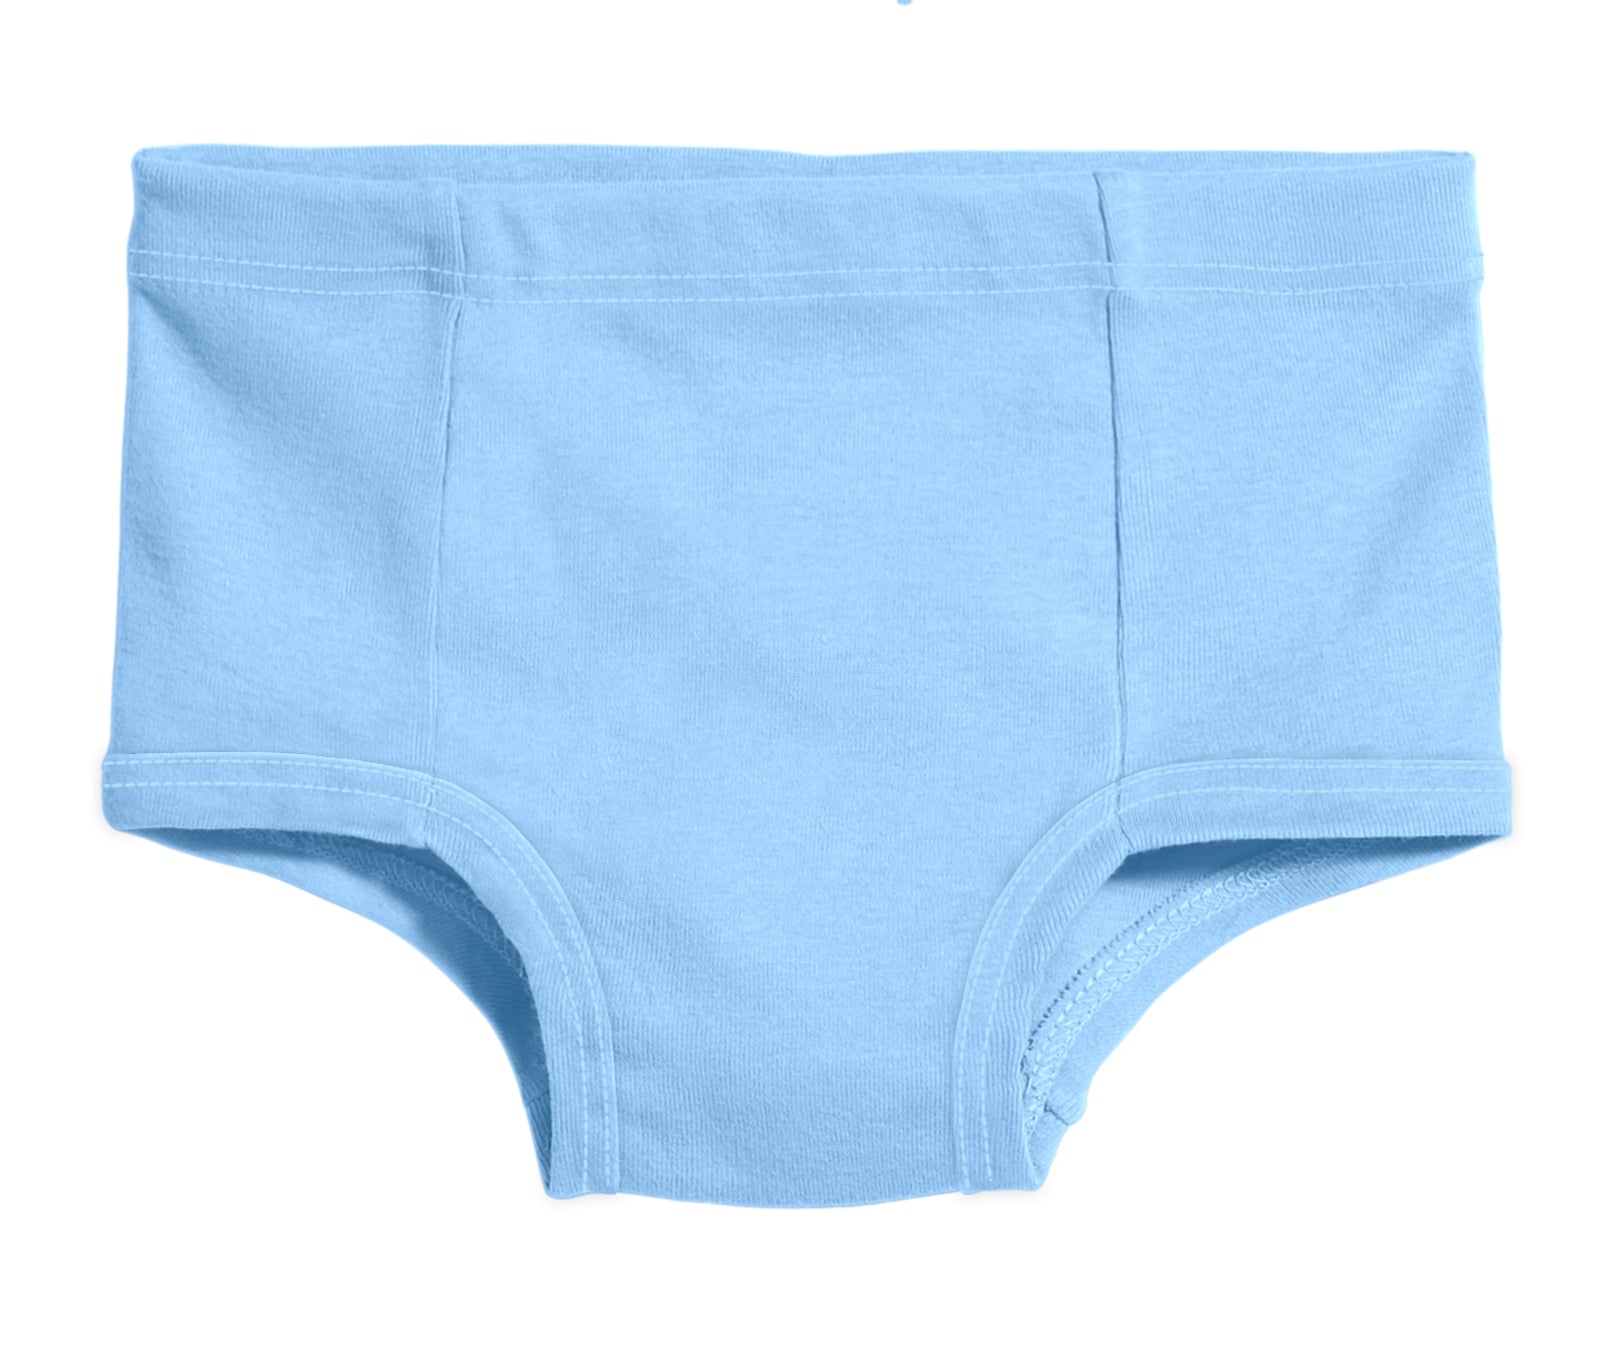 Unisex Briefs, Children's Underwear